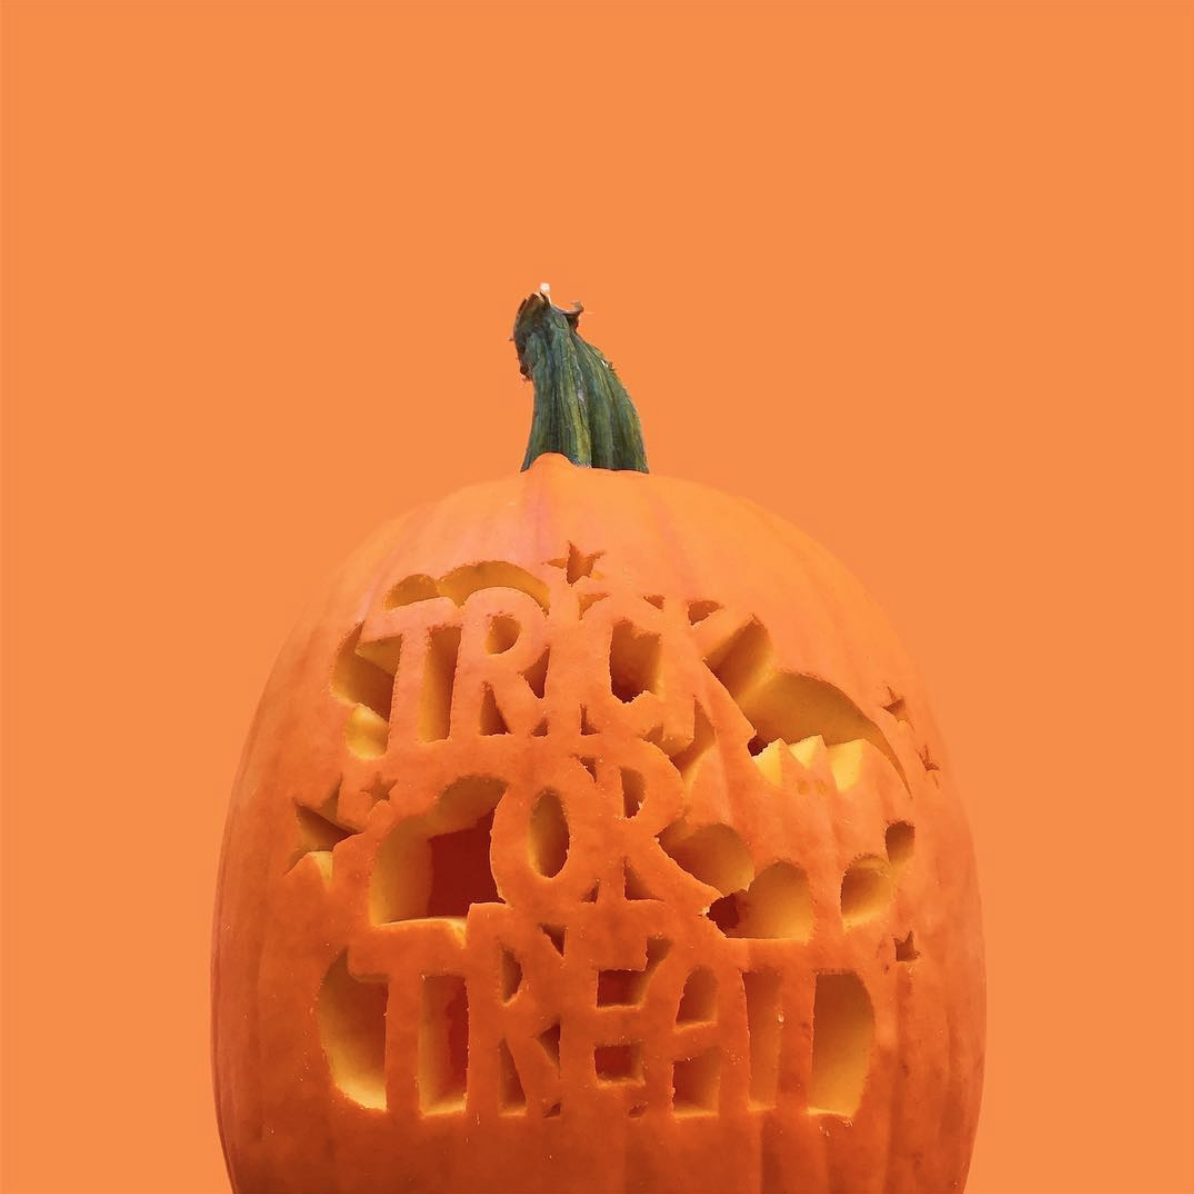 amy_chen_design_halloween_pumpkin_carving